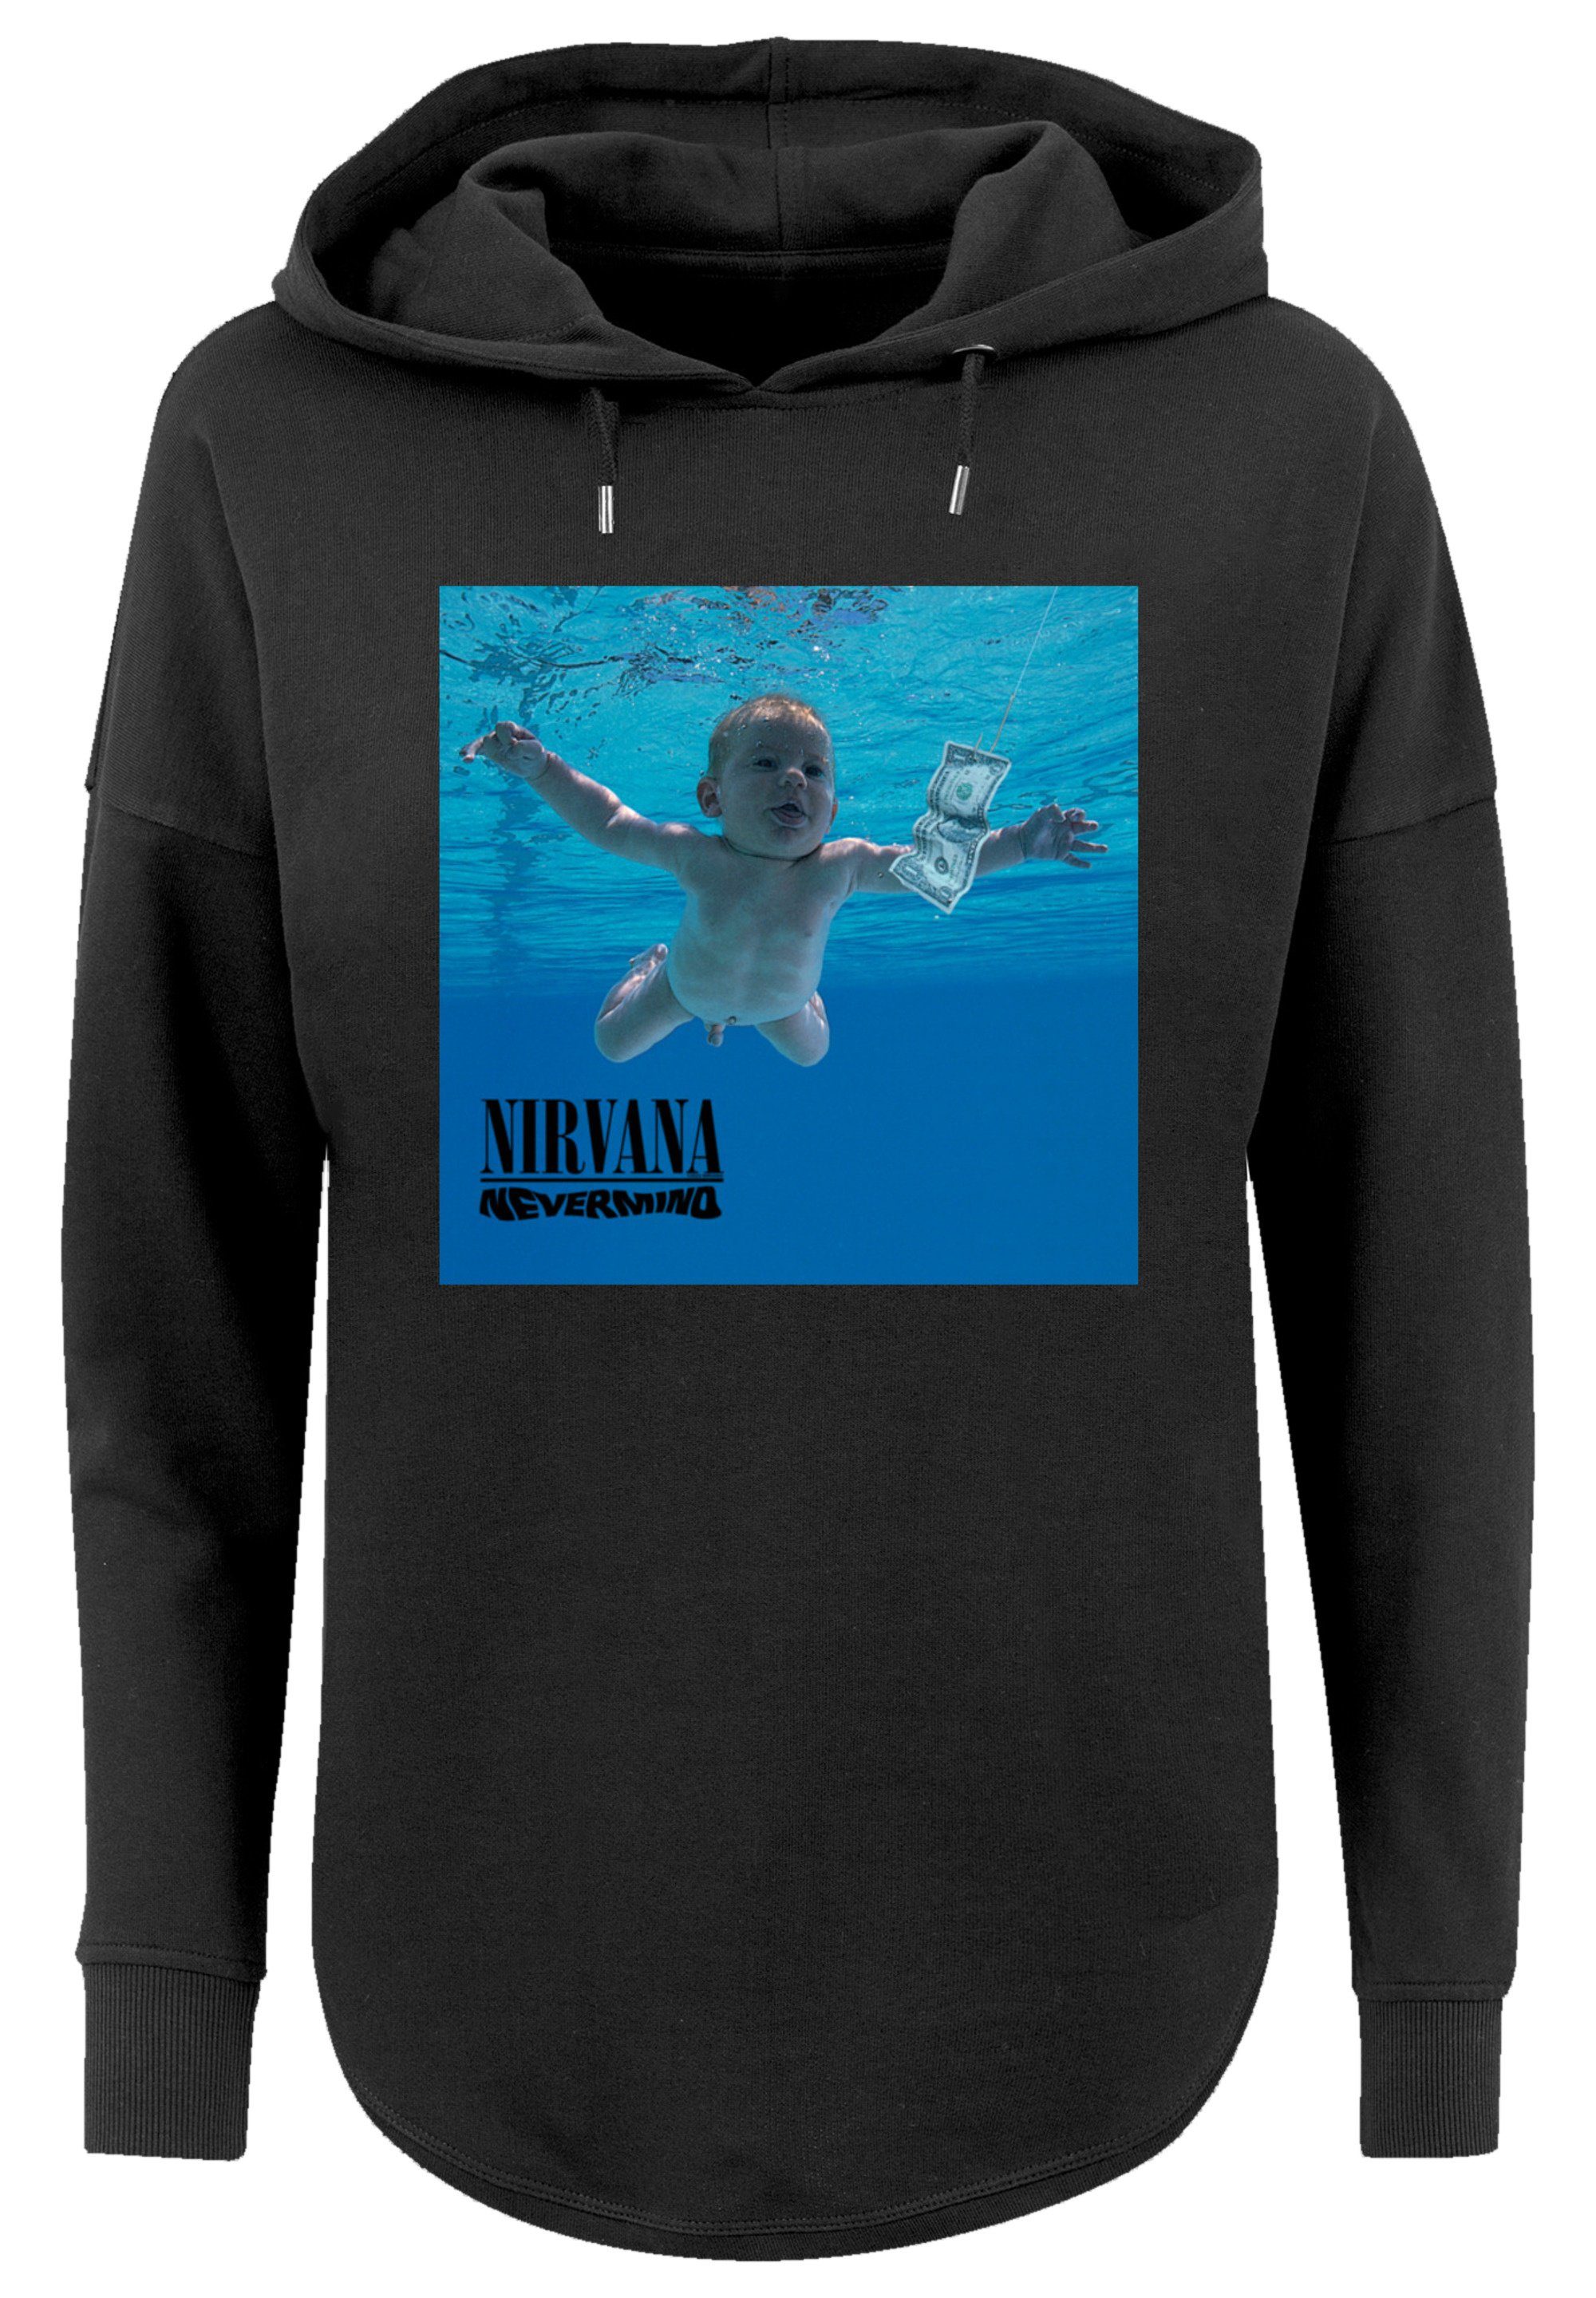 Nirvana Premium Band Qualität F4NT4STIC schwarz Rock Sweatshirt Album Nevermind